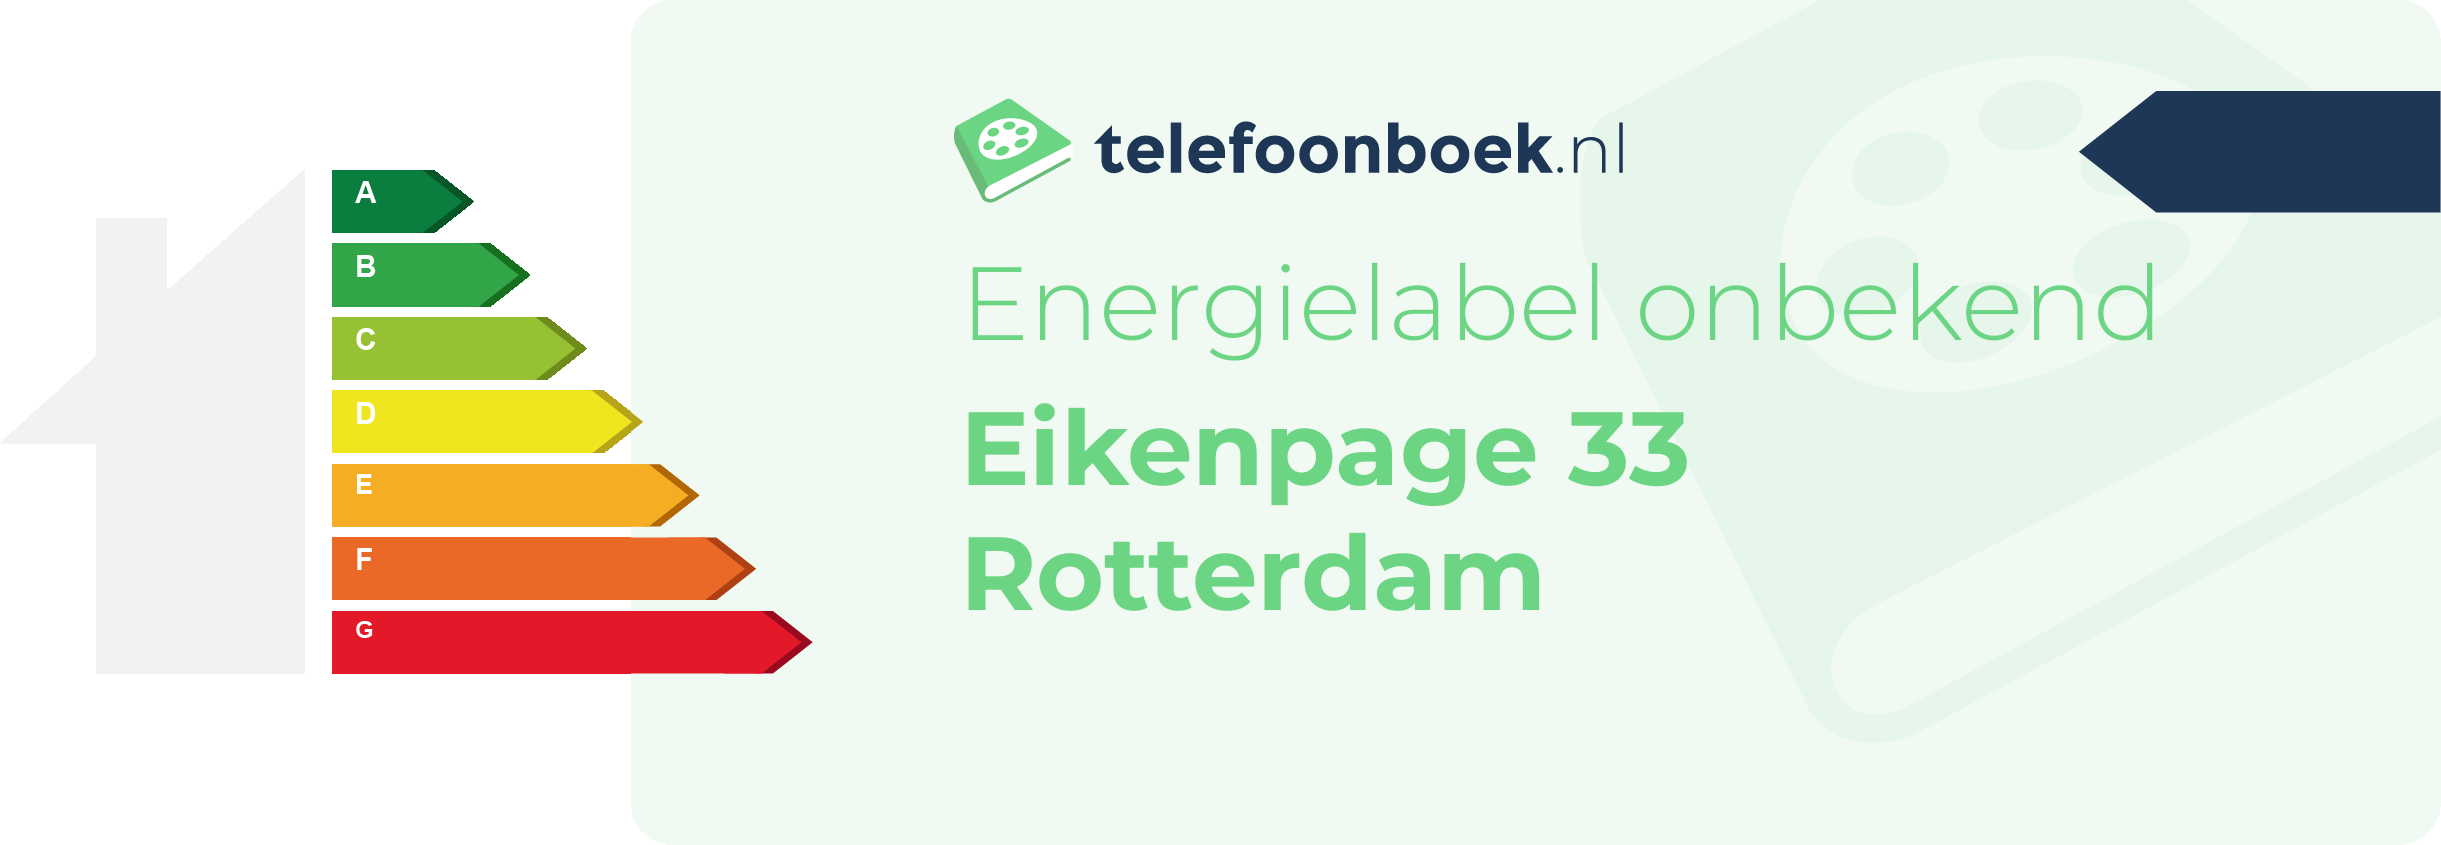 Energielabel Eikenpage 33 Rotterdam